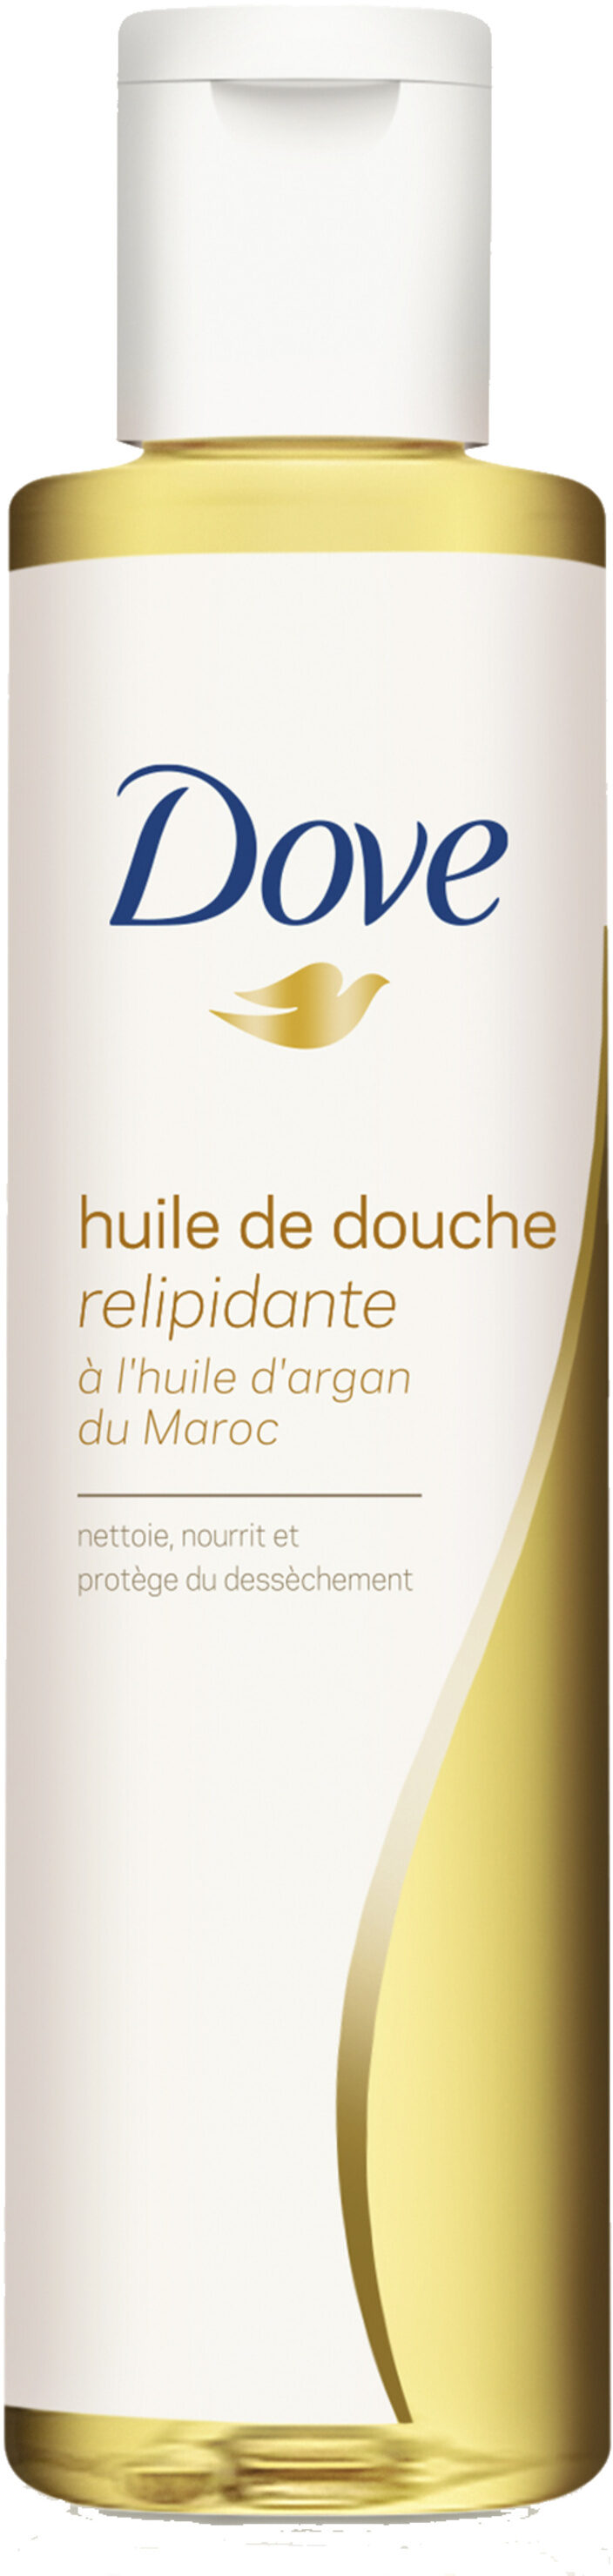 Dove Huile de Douche Relipidante Huile d'Argan du Maroc - 製品 - fr